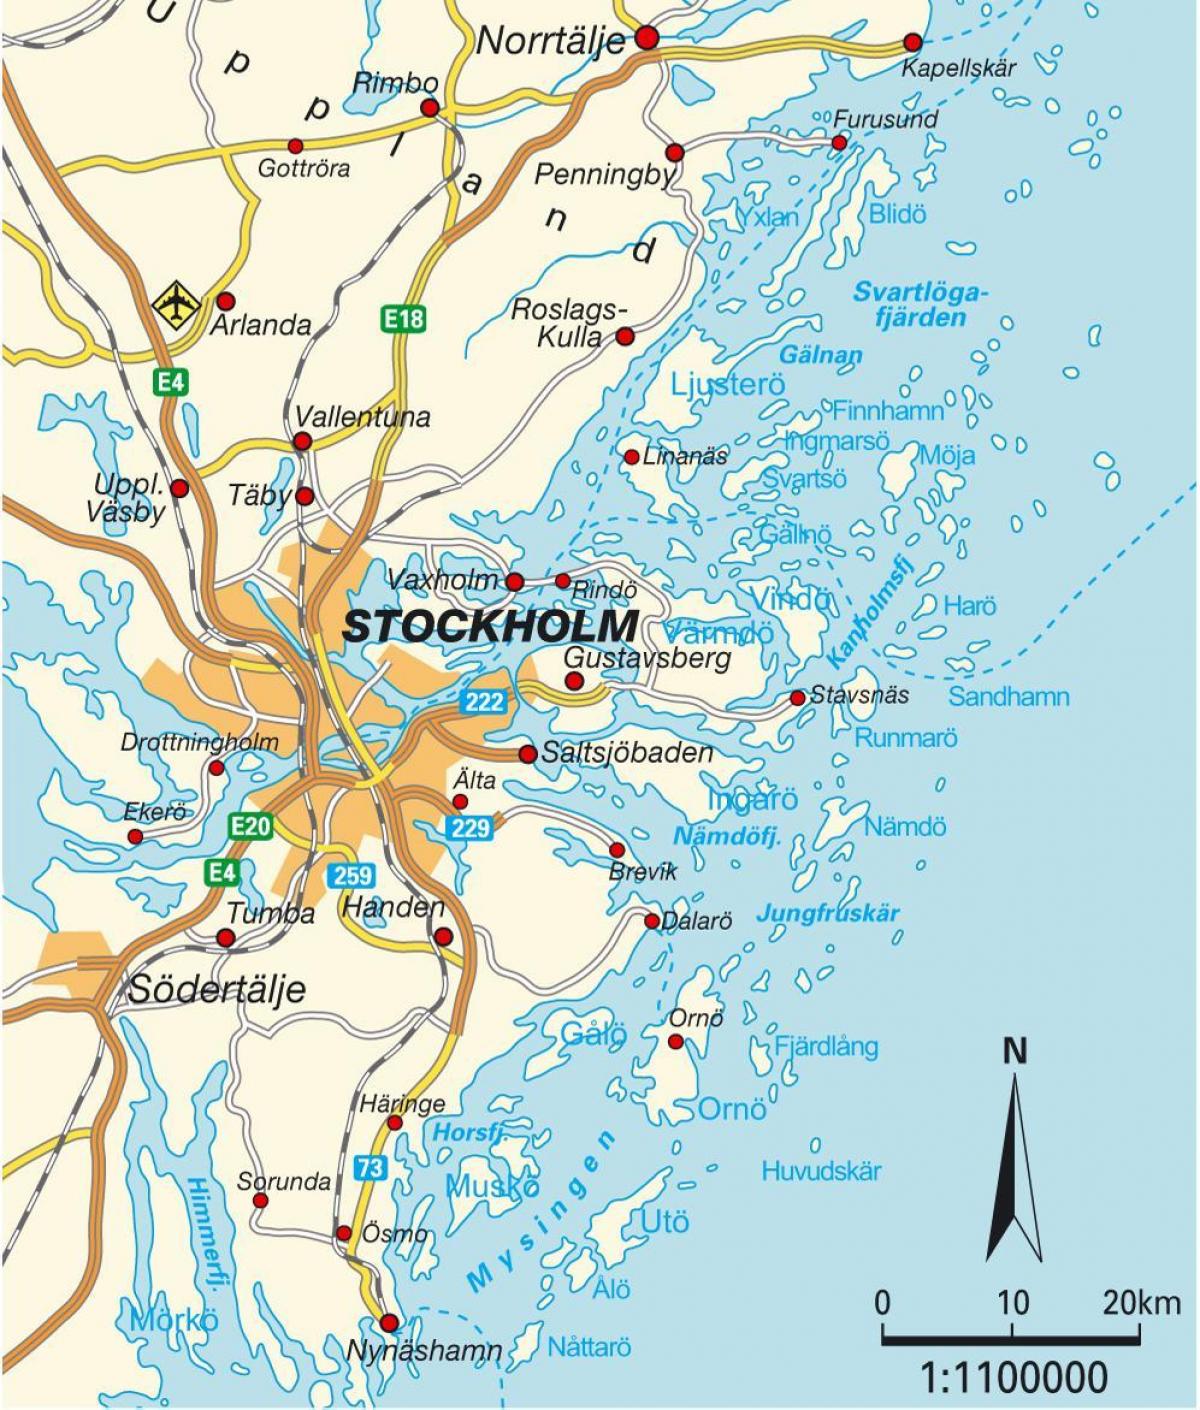 Stockholm trên bản đồ